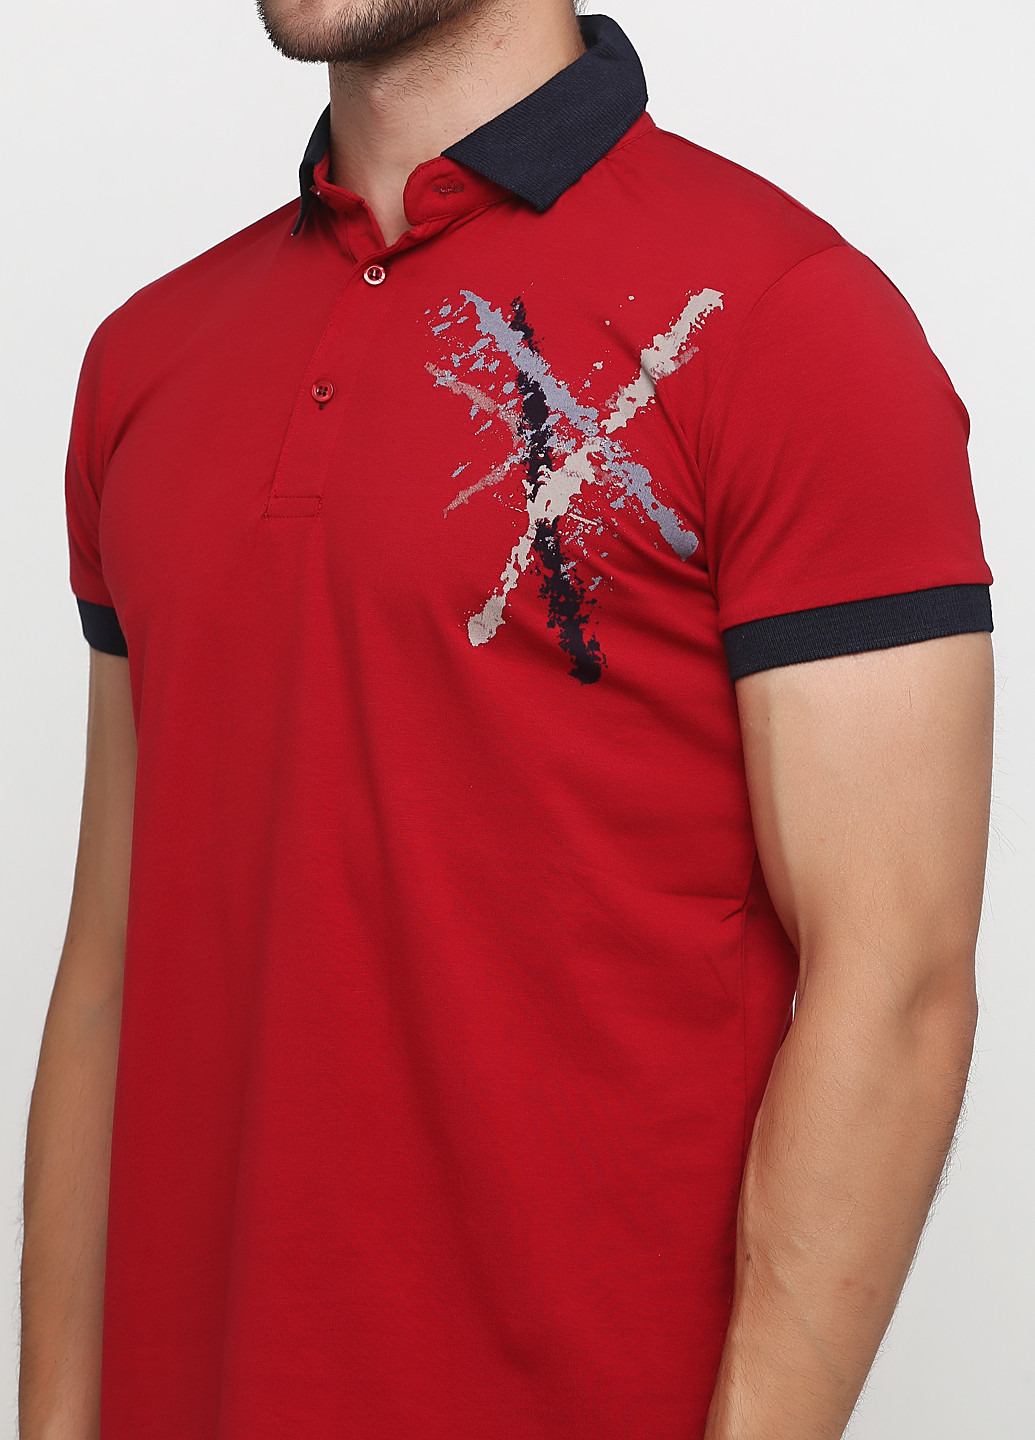 Бордовая футболка-поло для мужчин Golf с рисунком